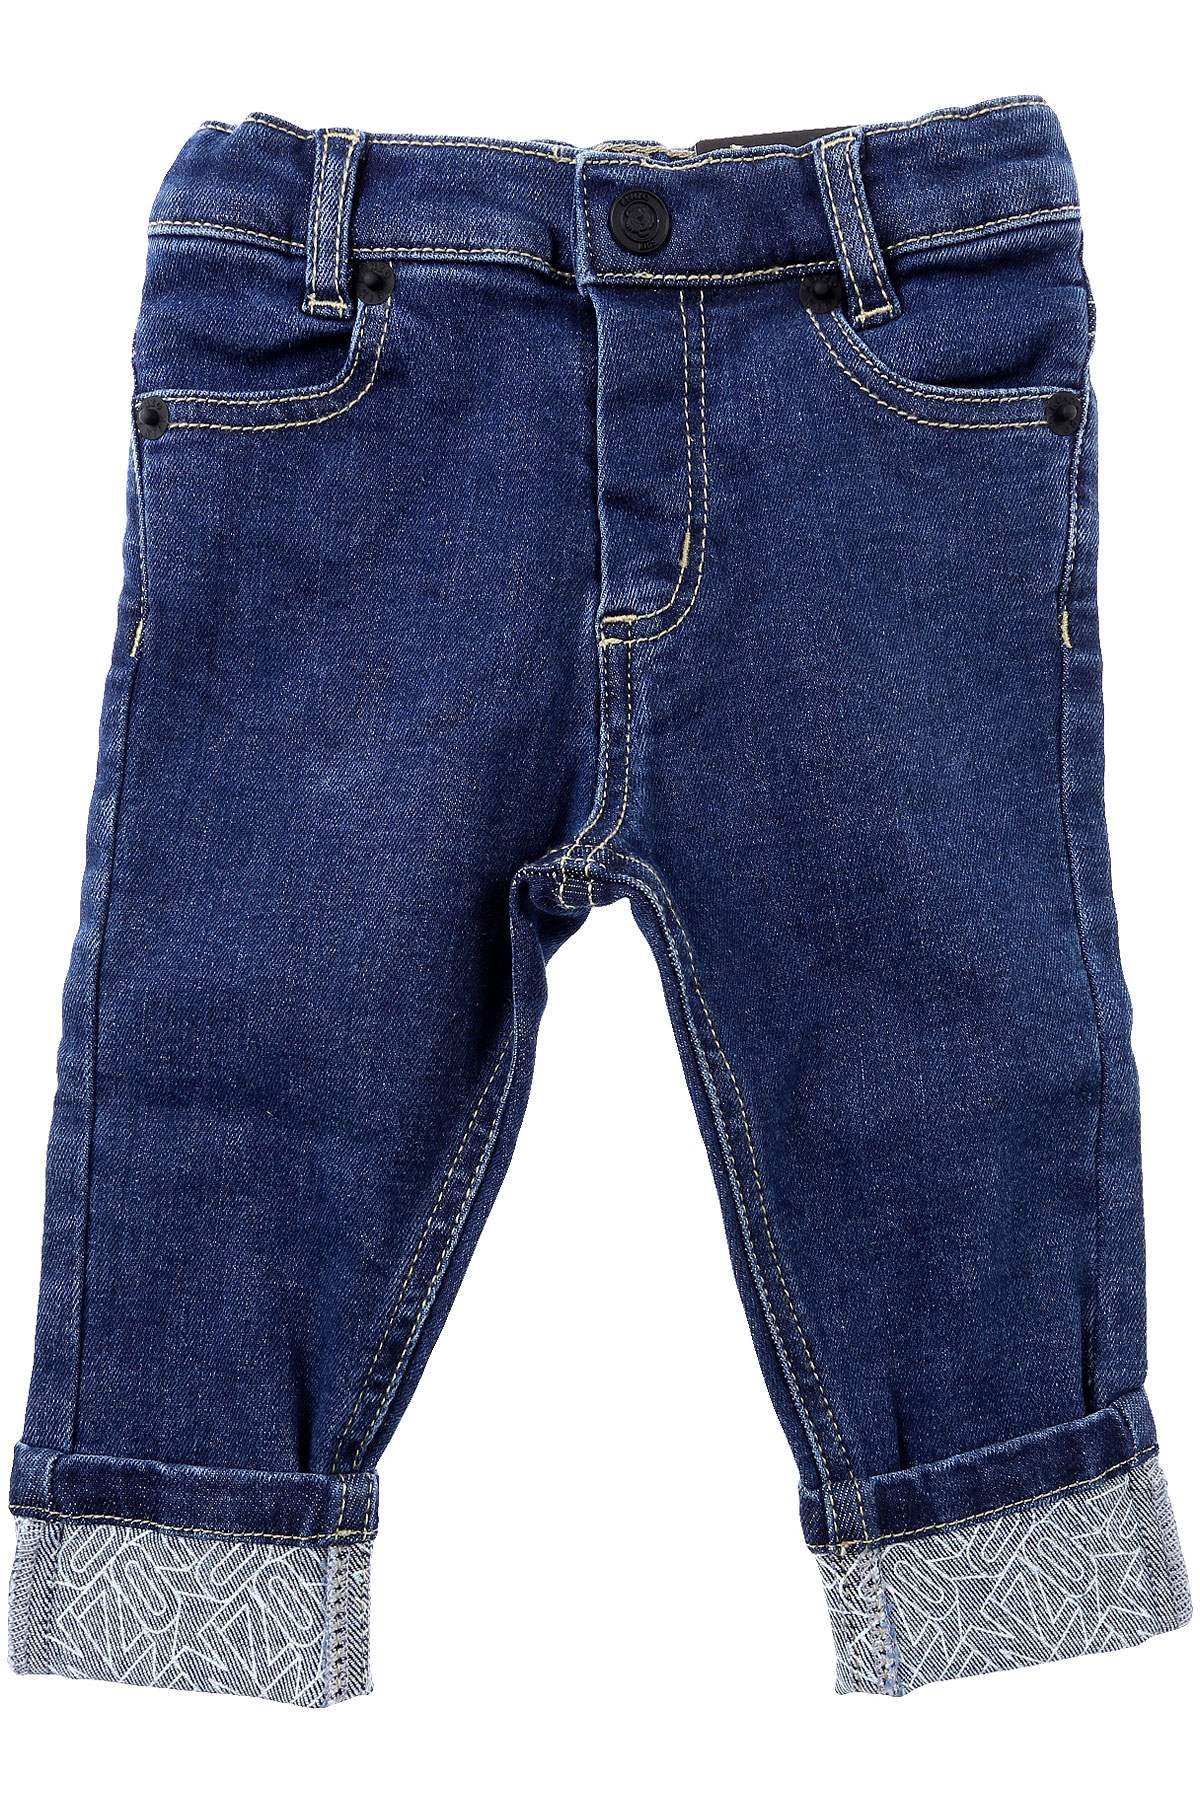 Kenzo Baby Jeans für Jungen Günstig im Sale, Denim- Blau, Baumwolle, 2017, 12 M 18 M 6M 9 M